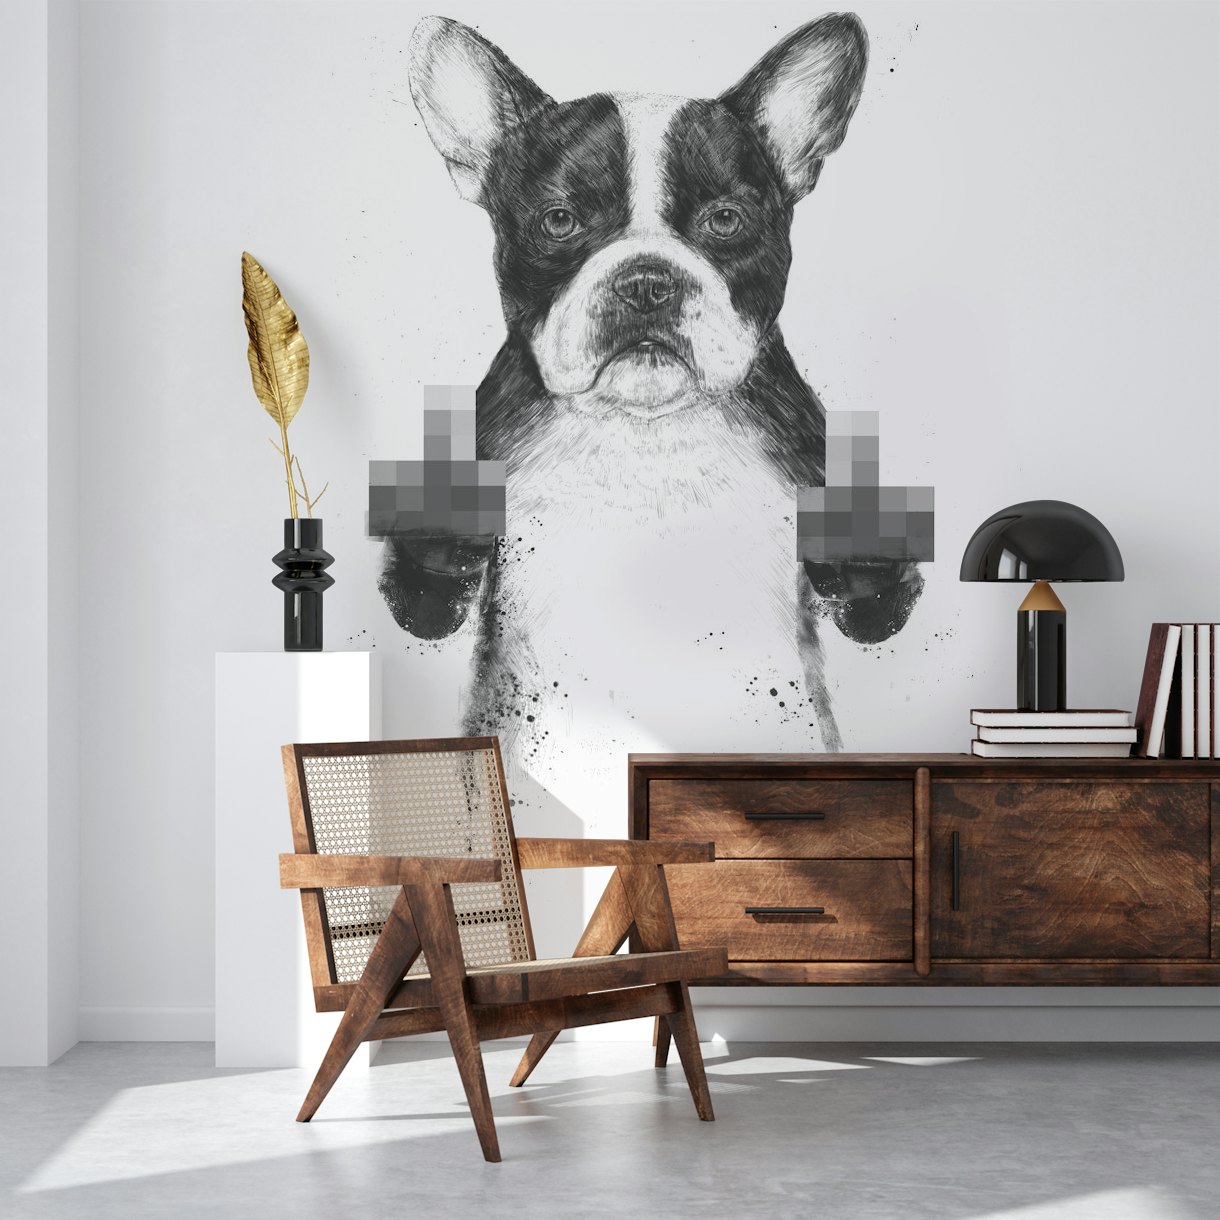 Censored dog wallpaper